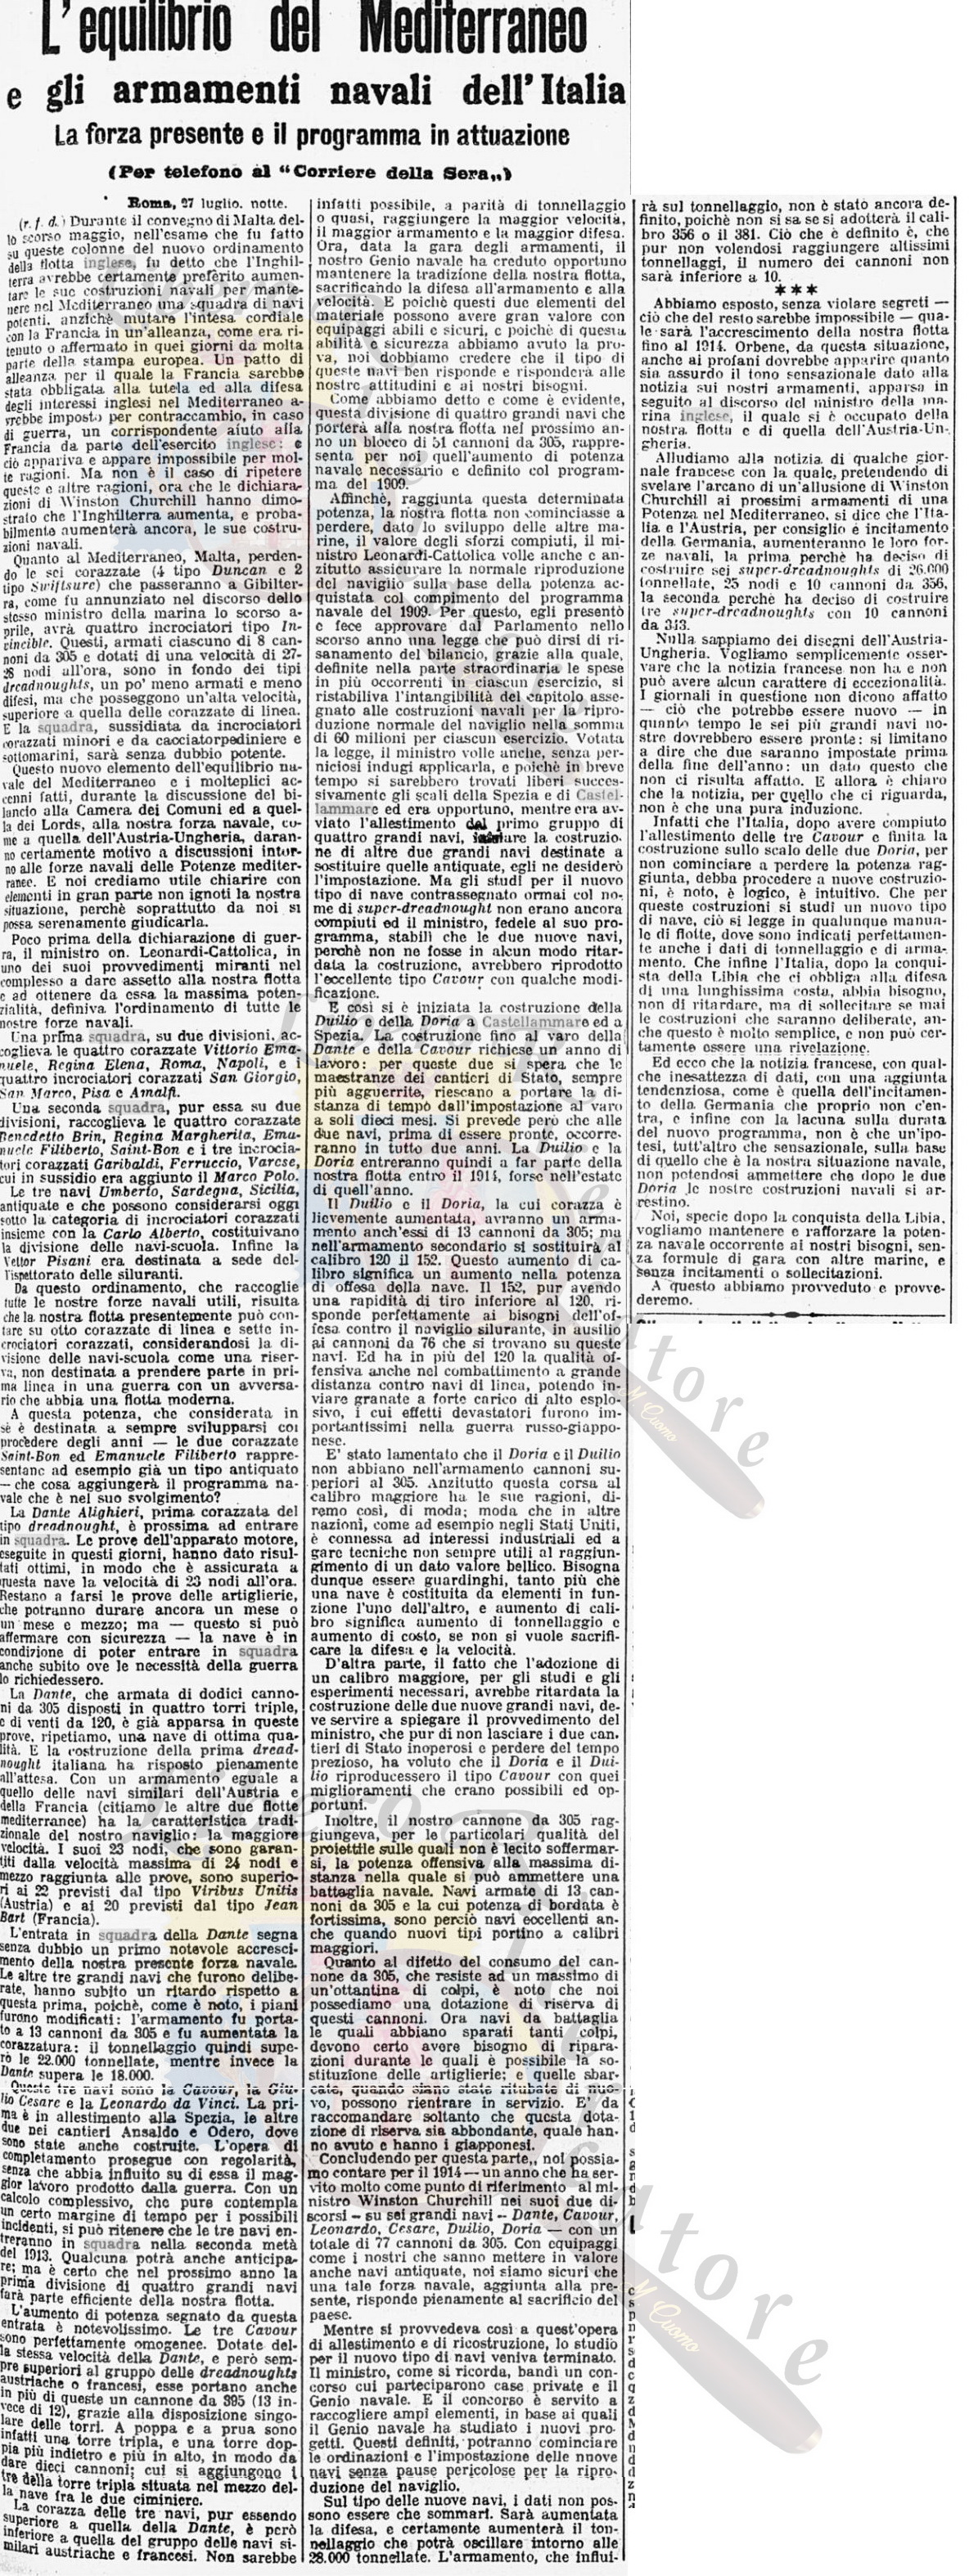 Equilibrio nel mediterraneo e gli armamenti navali dell'Italia, Corriere della Sera 28 Luglio 1912